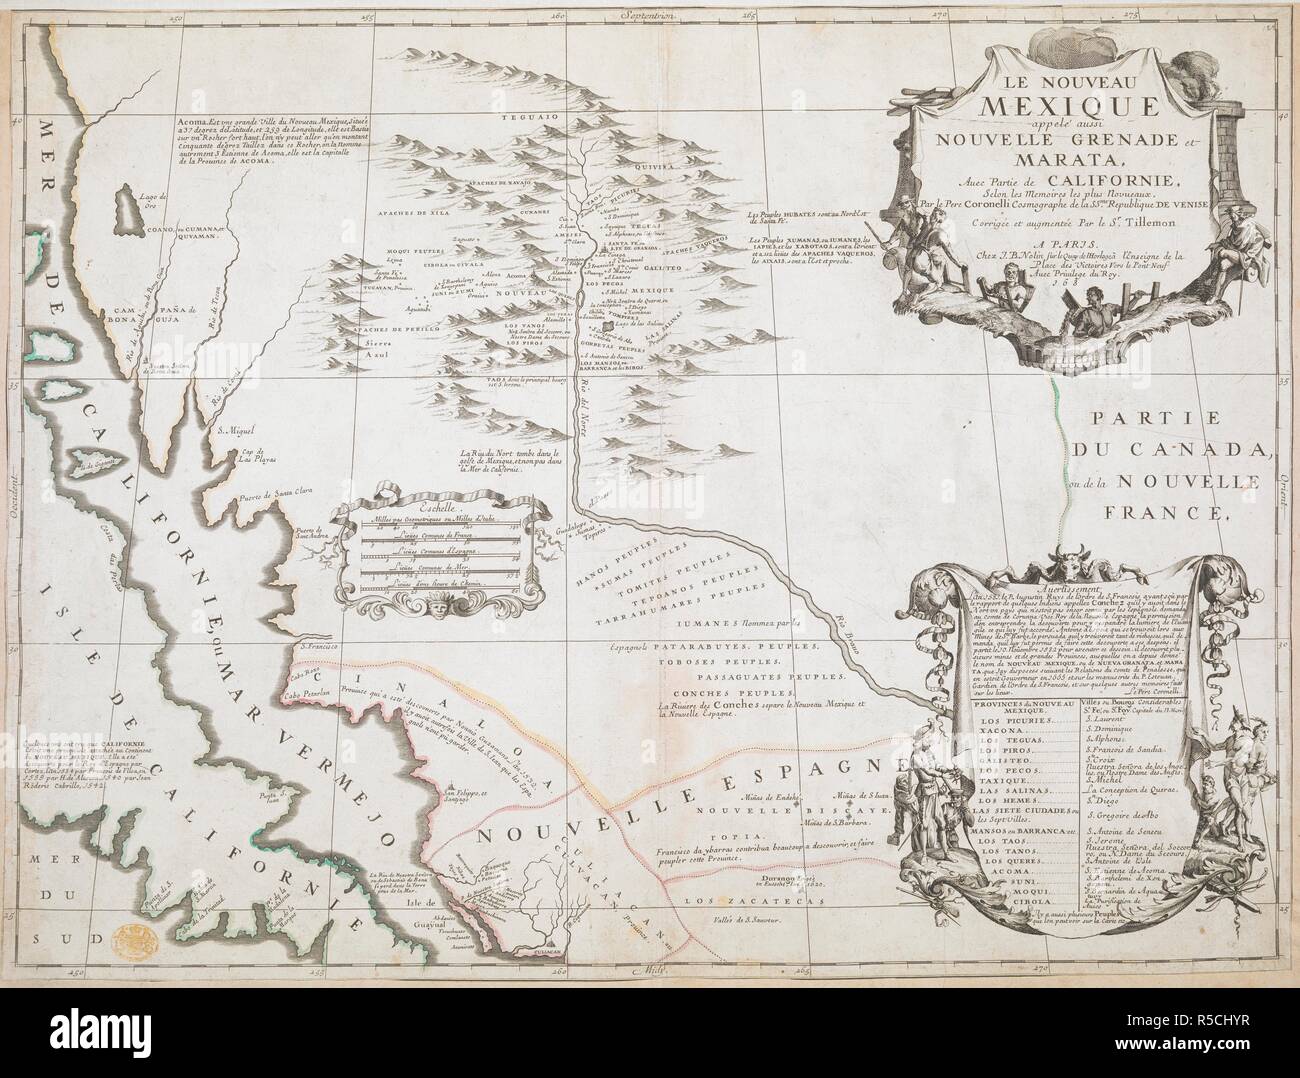 A map of New Mexico also called New Grenada and Marata. LE NOUVEAU MEXIQUE appelÃ© aussi NOUVELLE GRENADE et MARATA. Avec Partie de CALIFORNIE. A PARIS : Chez J.B. Nolin sur le Quay de l'Horloge, Ã  l'Enseigne de la place des Victoires Vers le Pont Neuf Auec Privilege du Roy, 168 [about 1687.]. Copperplate engraving, hand colour in outline. Source: Maps K.Top.122.99. Language: French. Author: Coronelli. Stock Photo